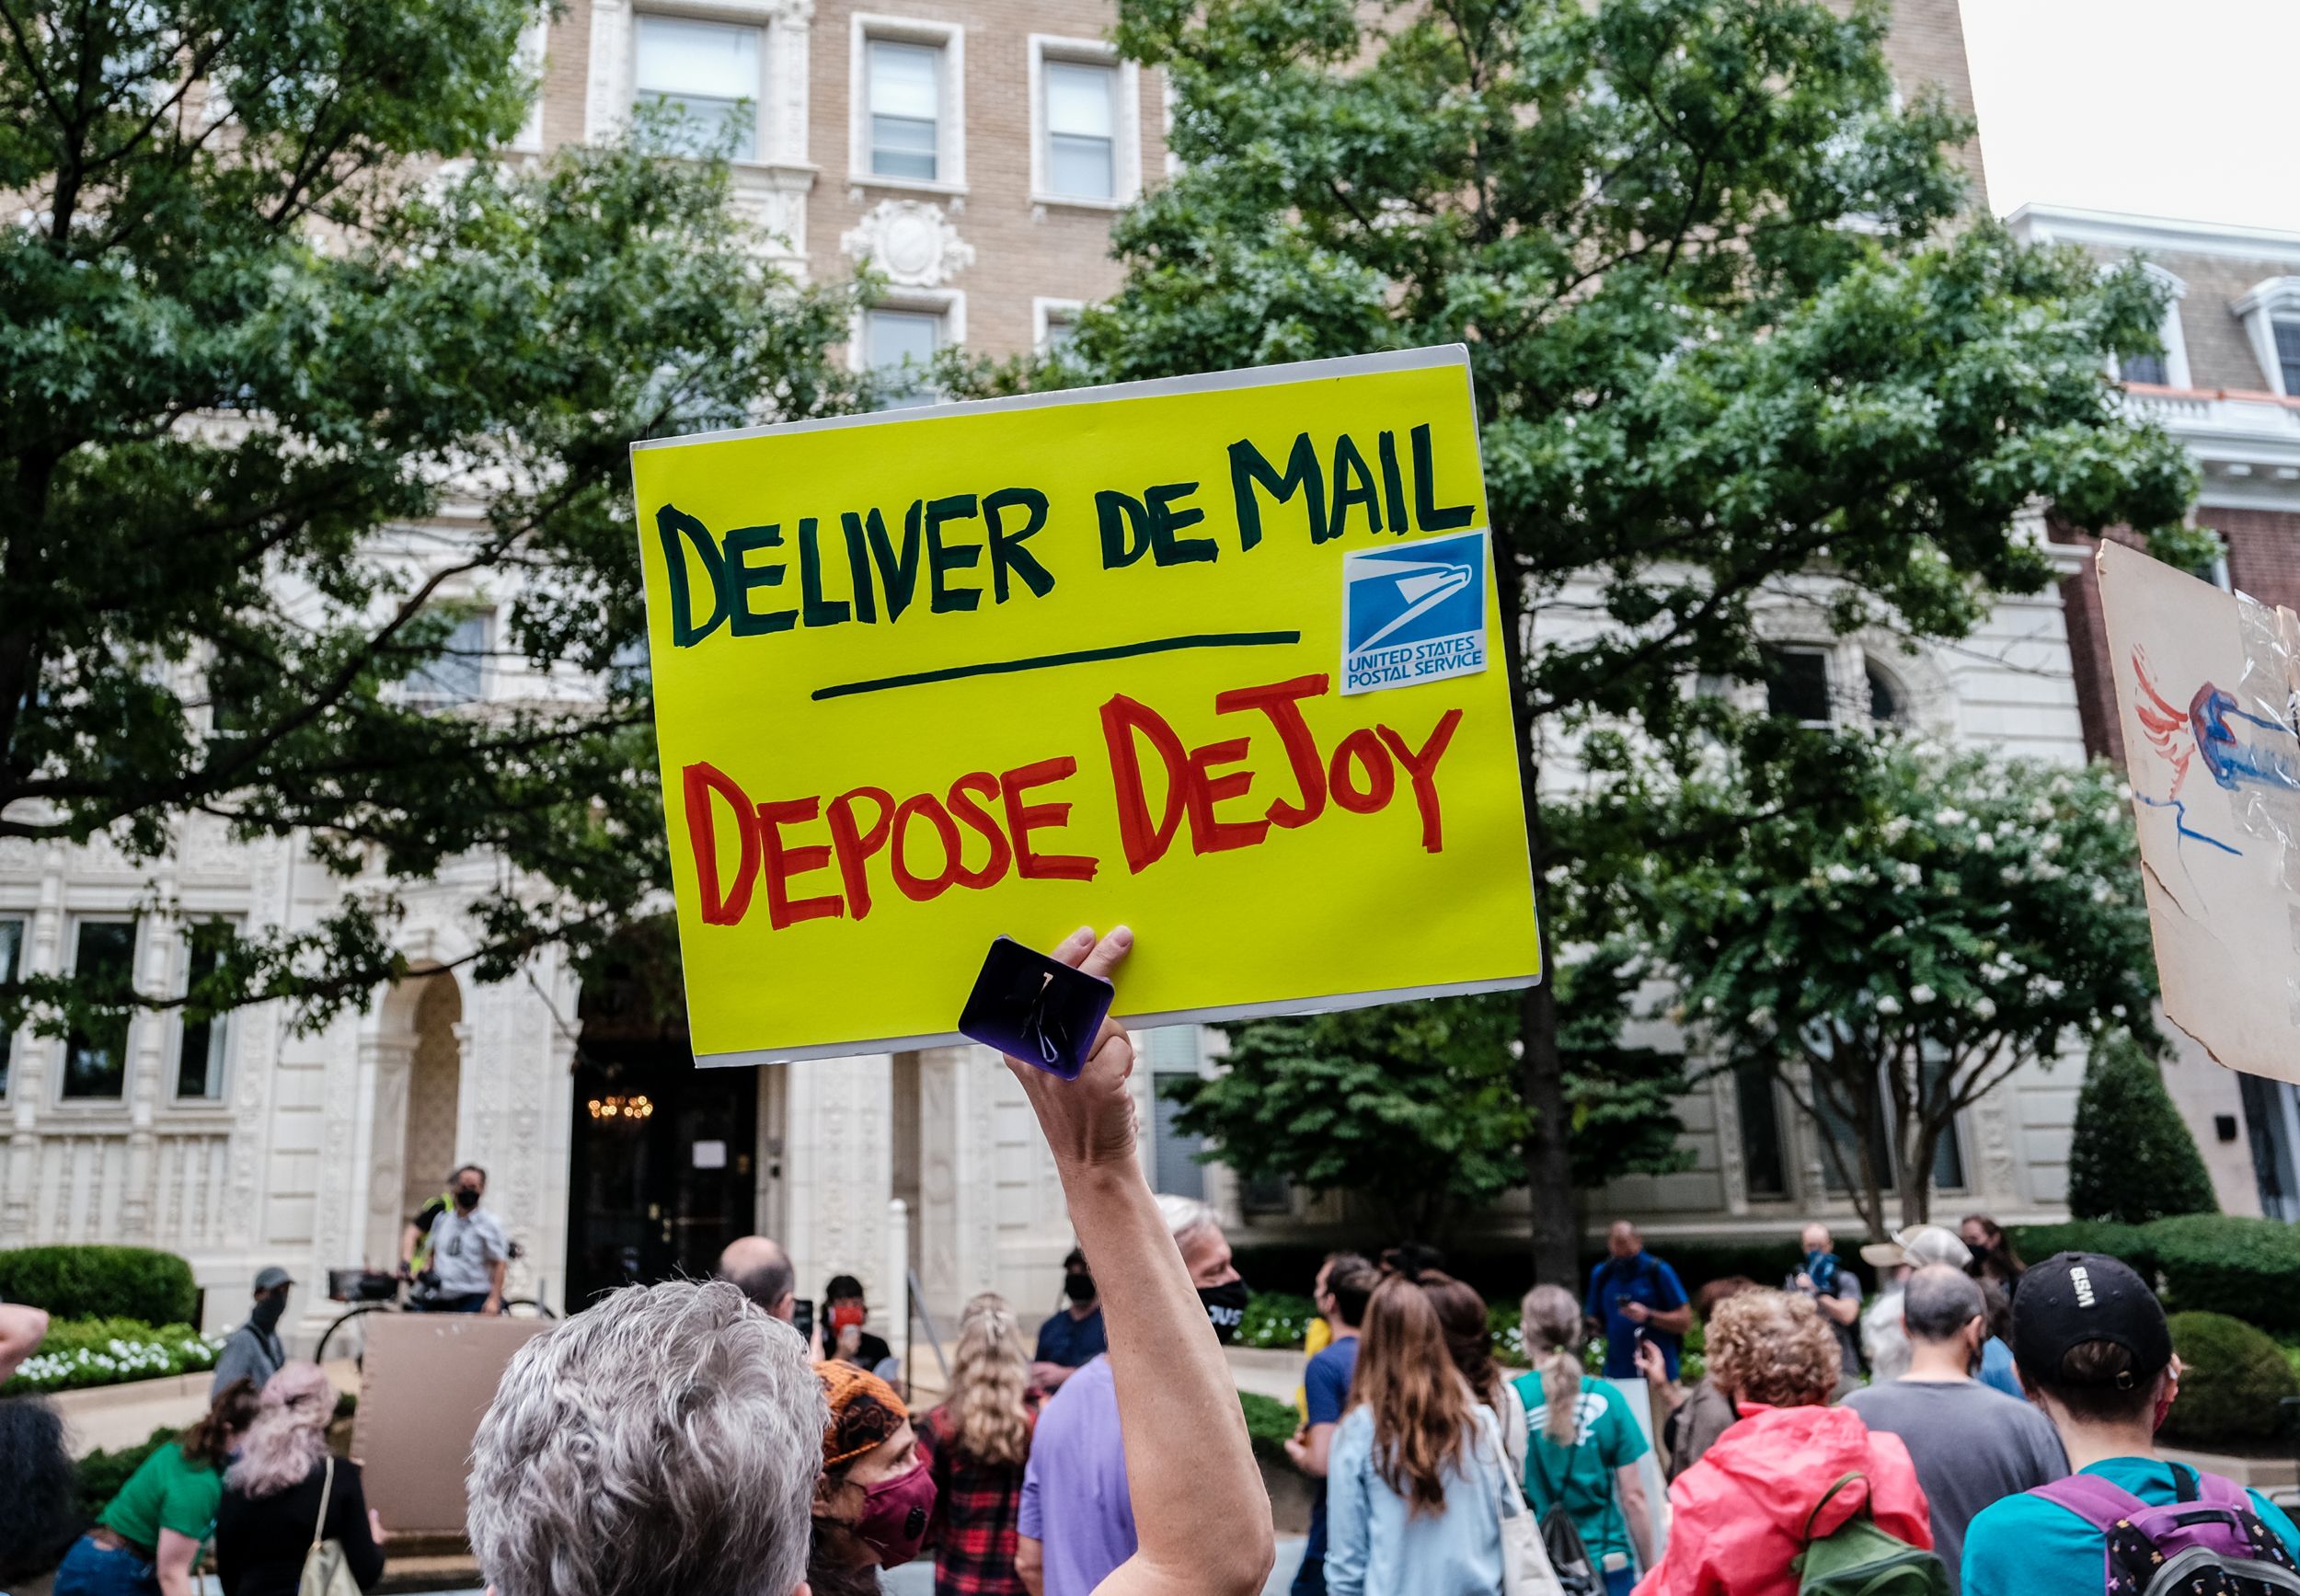 A sign saying "deliver de mail depose dejoy"